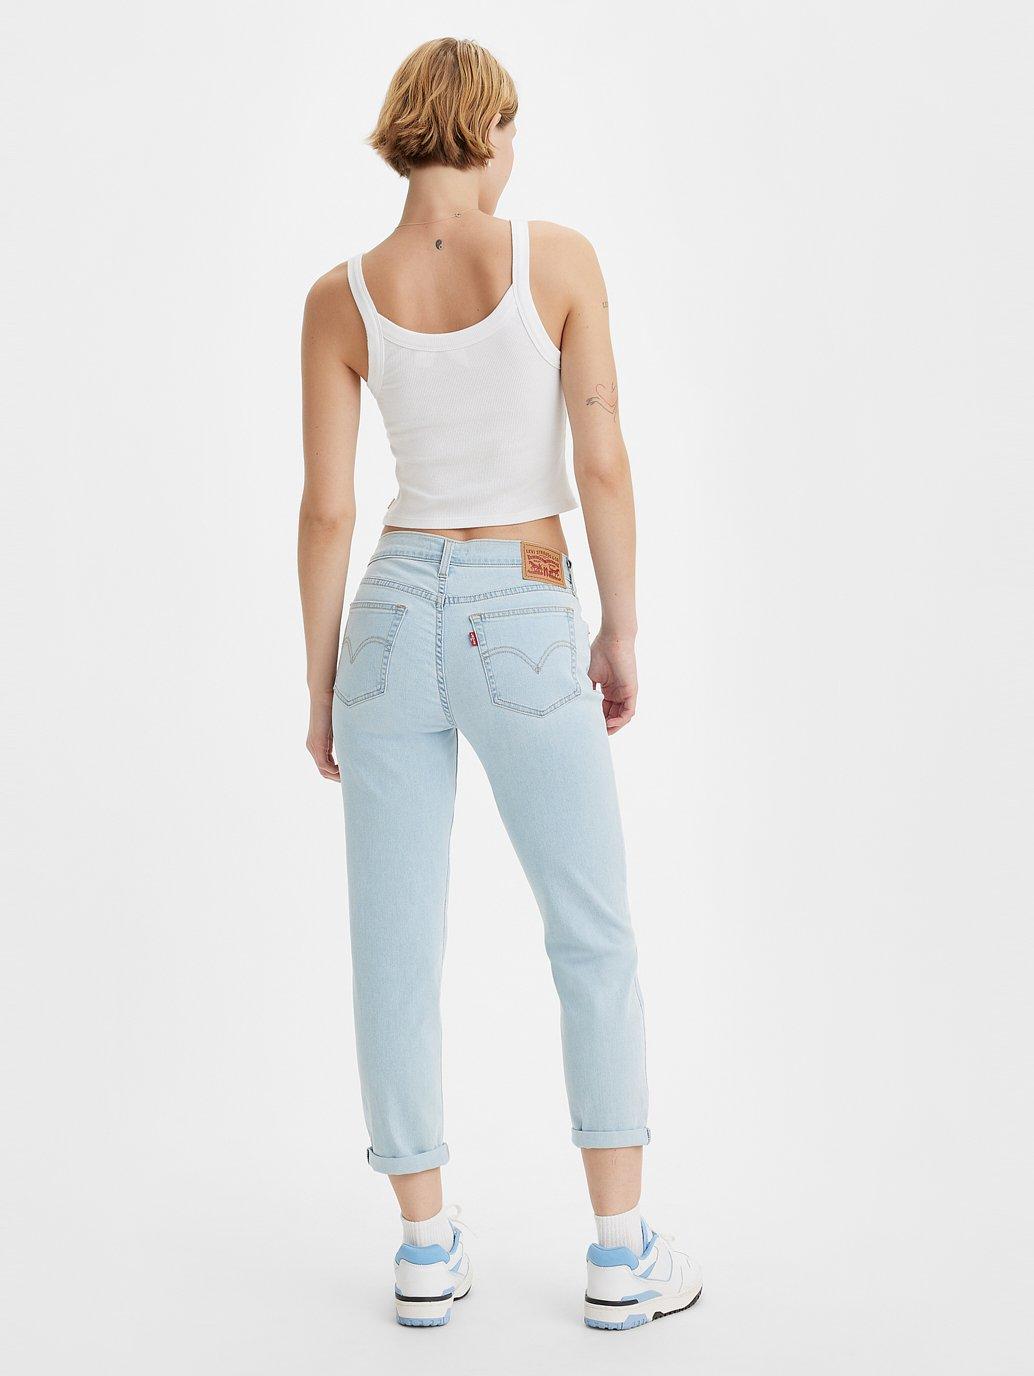 Buy Levi'S® Women'S Mid-Rise Boyfriend Jeans | Levi'S® Official Online  Store My